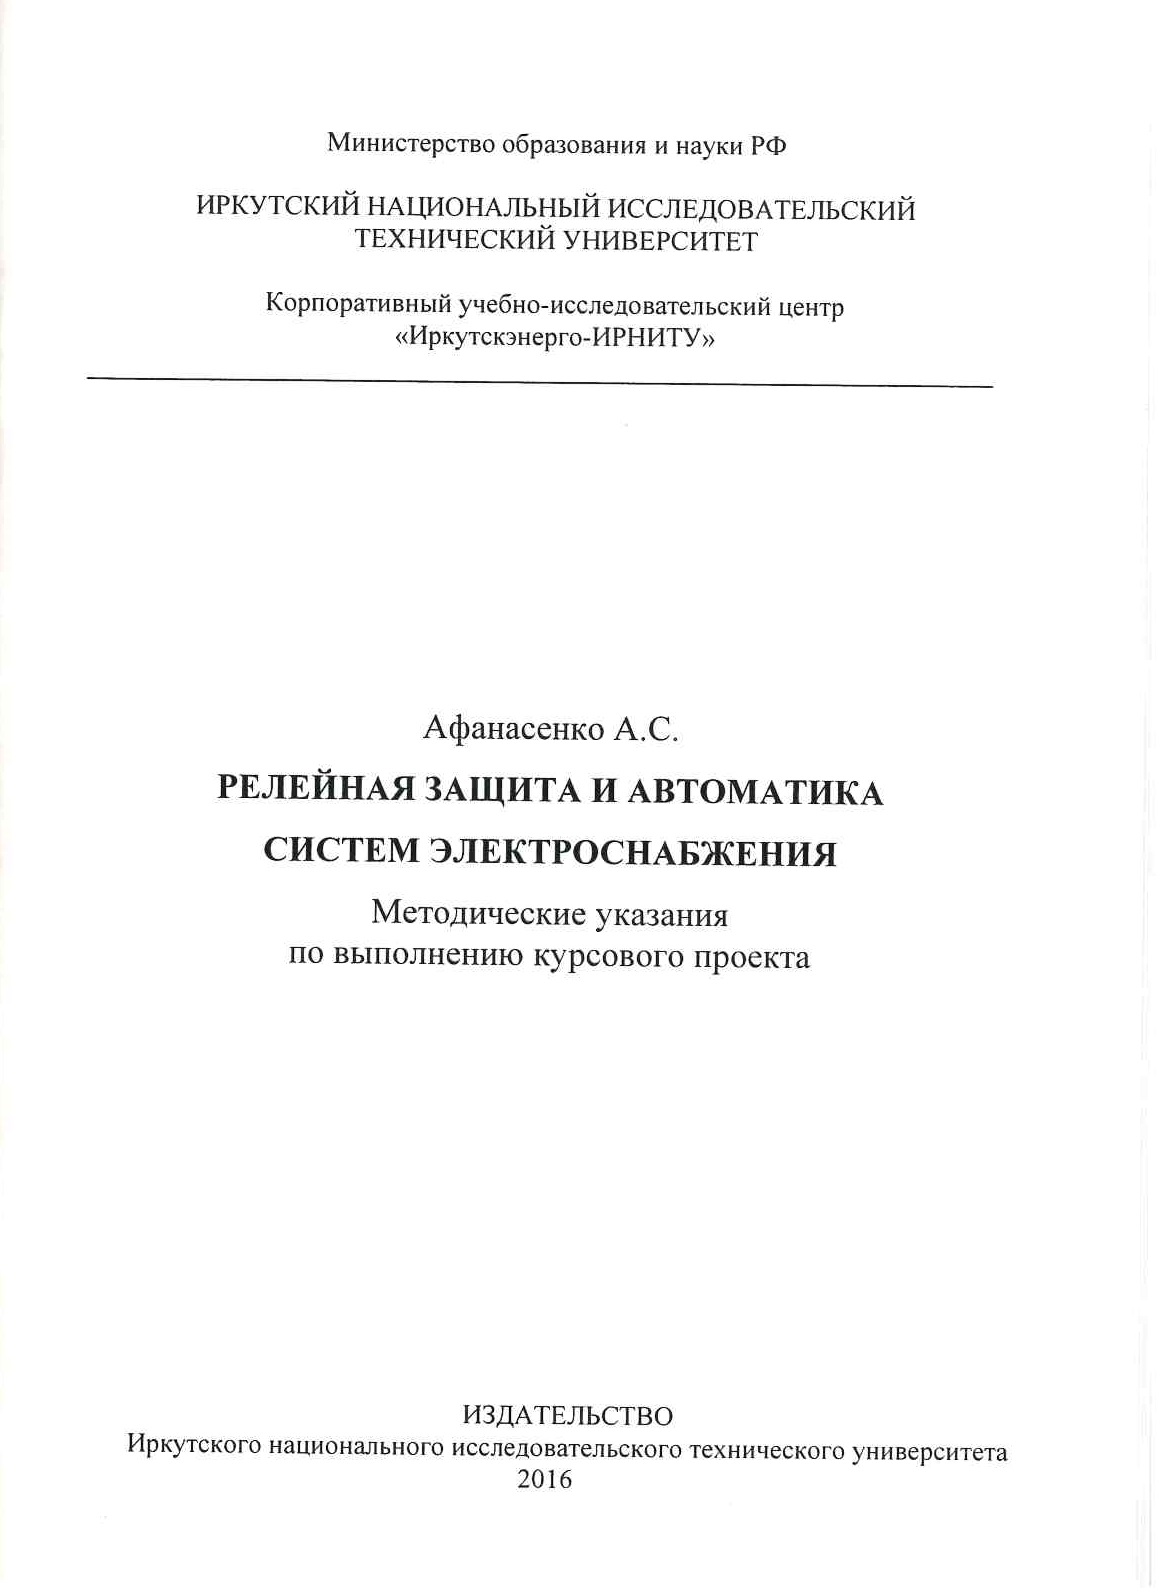 Афанасенко А.С. Релейная защита и автоматика систем электроснабжения